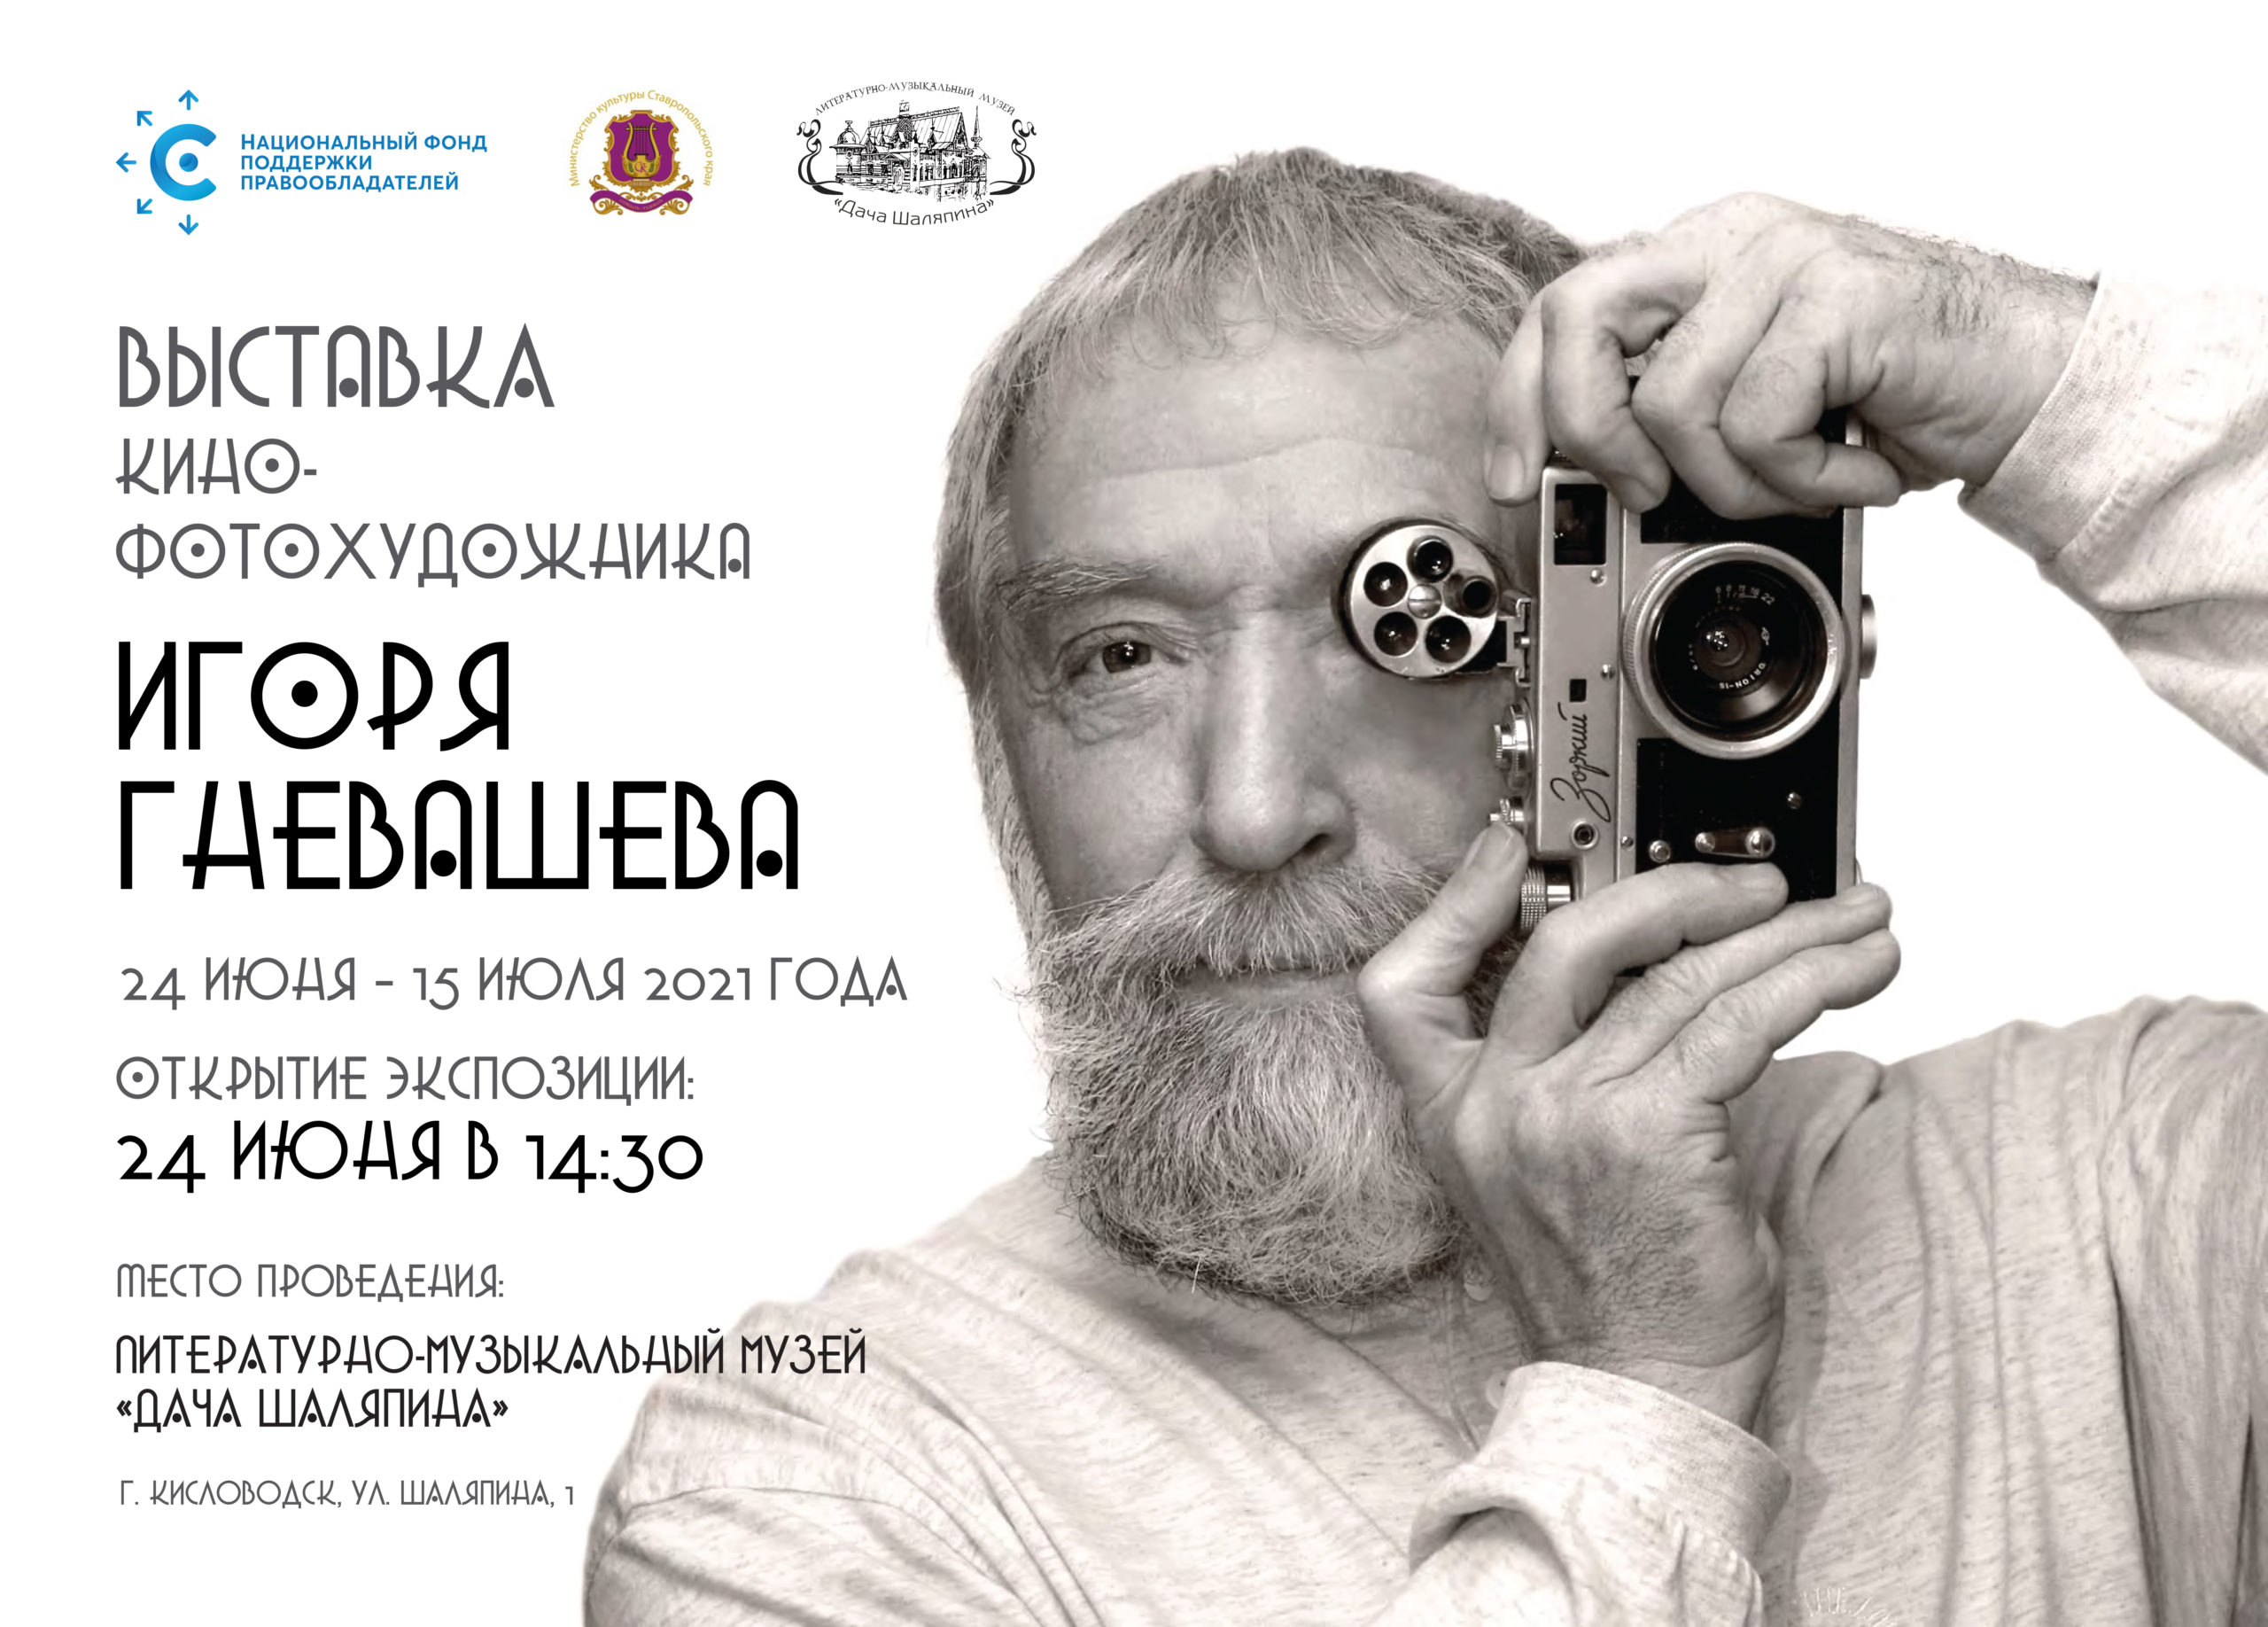 НФПП организует фотовыставку Игоря Гневашева на «Шаляпинских сезонах» в Кисловодске